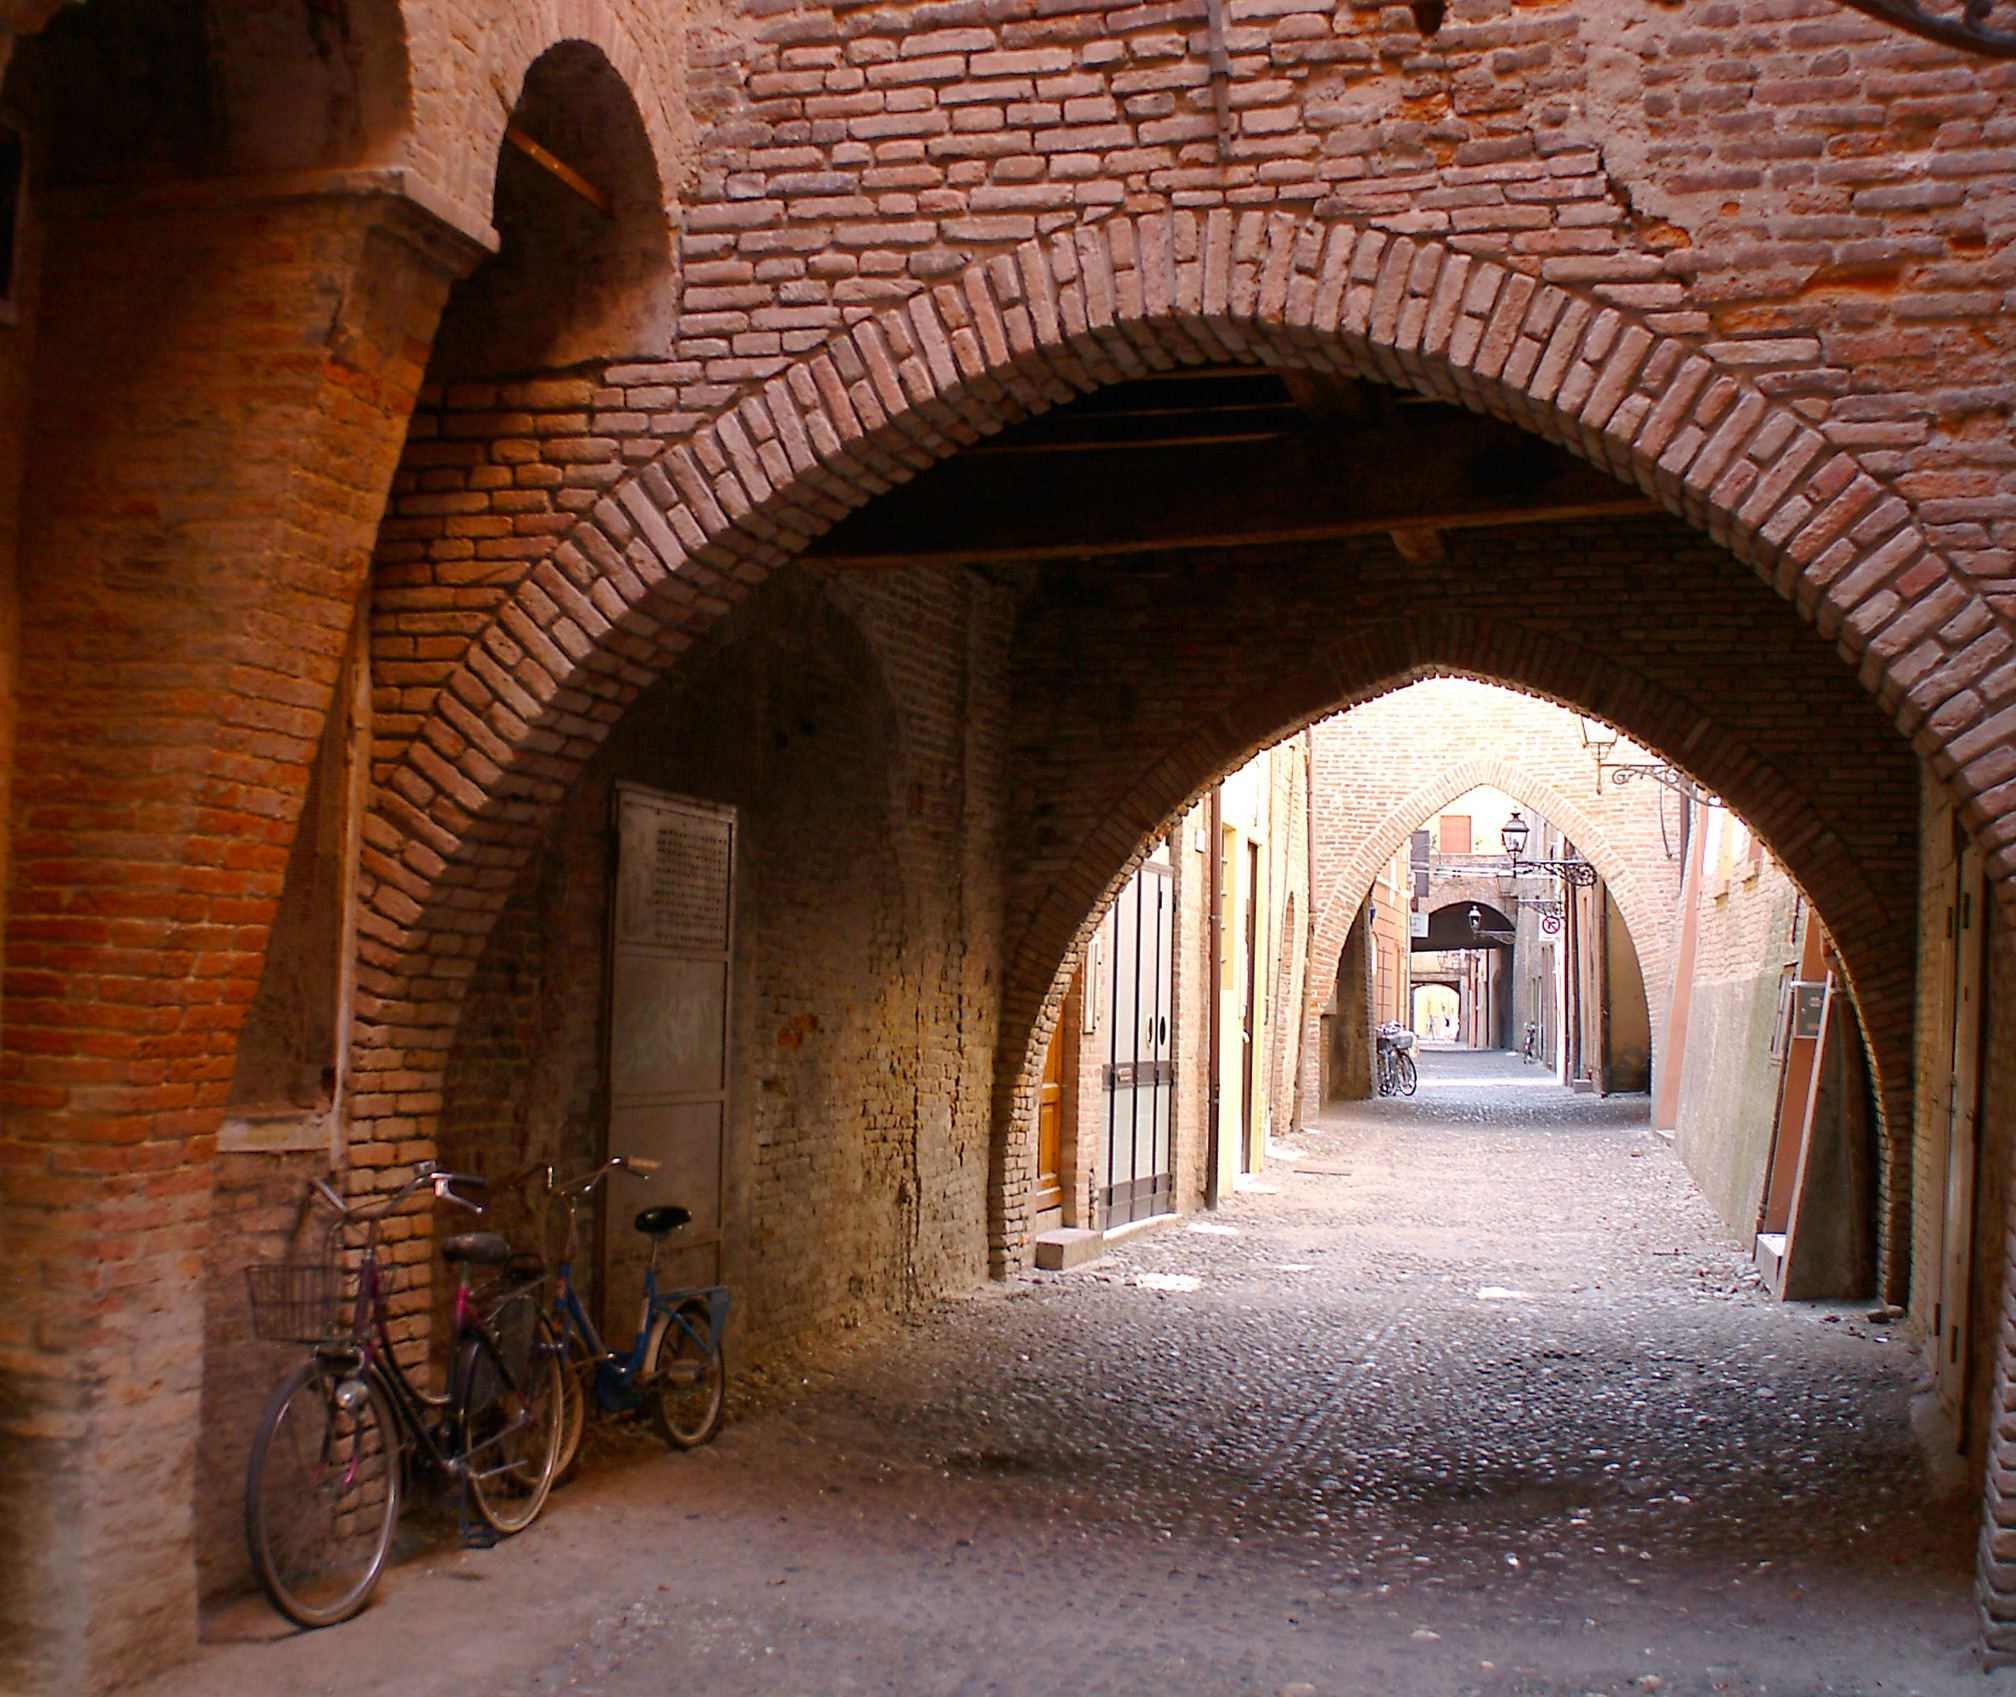 Il centro medievale — Ferrara Terra e Acqua